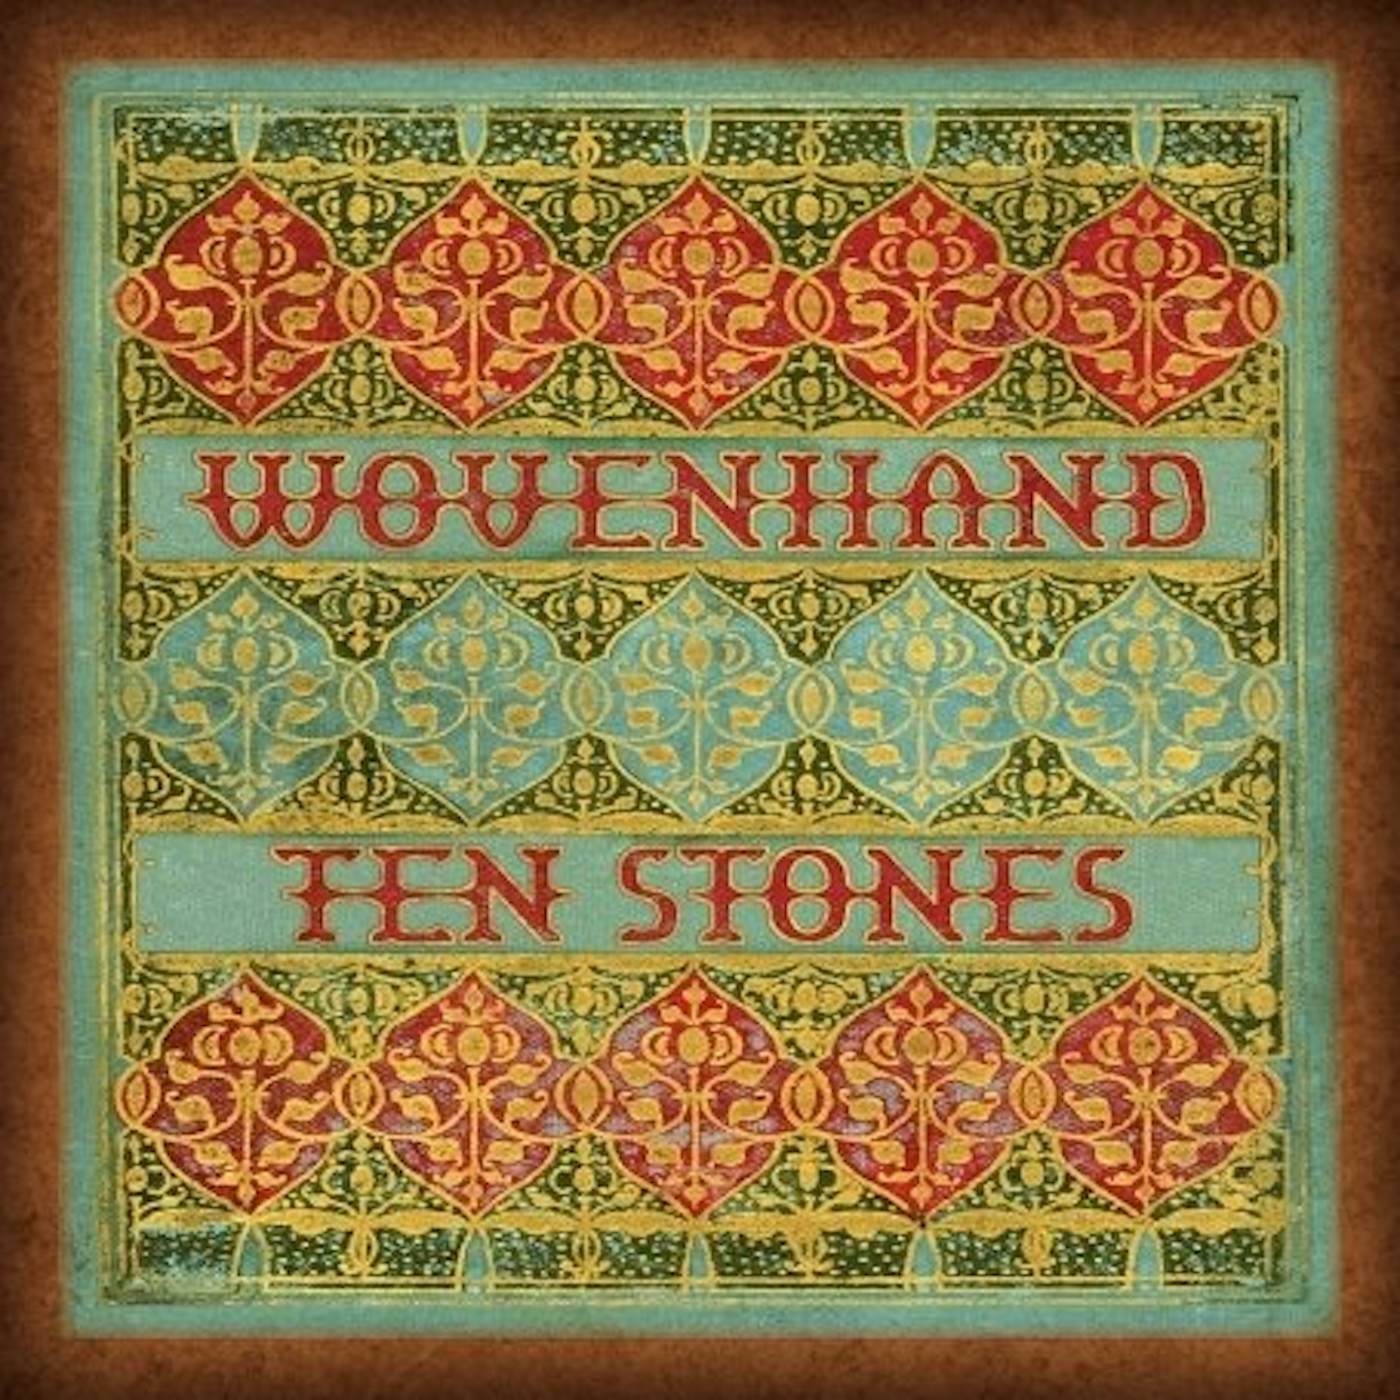 Wovenhand Ten Stones Vinyl Record